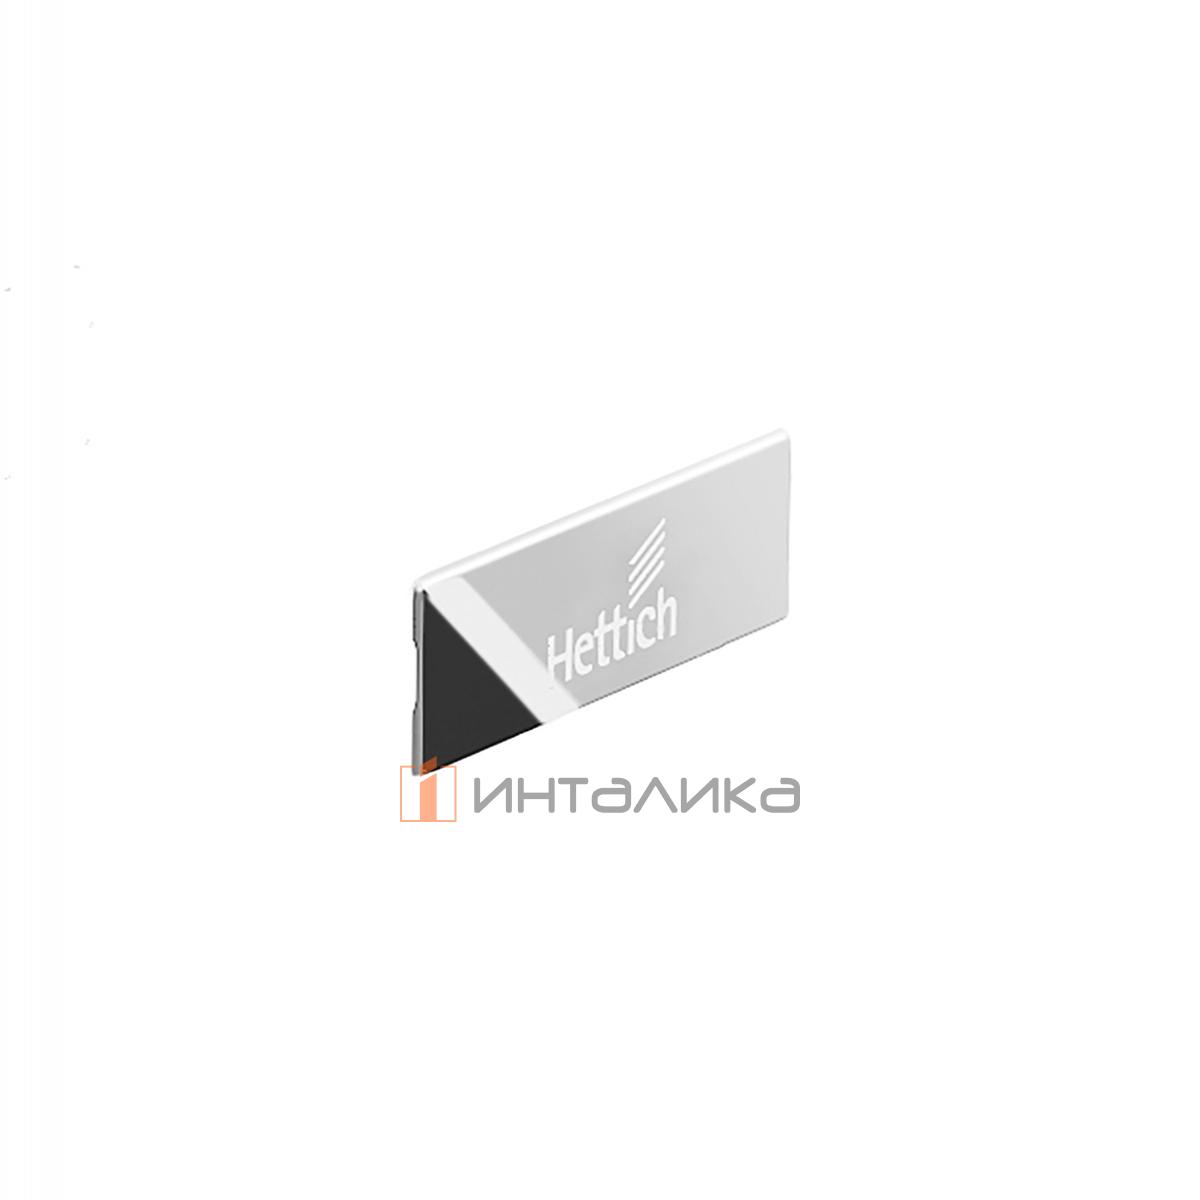 Заглушка для ящика HETTICH InnoTech Atira с лого Hettich, пластик, цвет белый/хром, (V300)